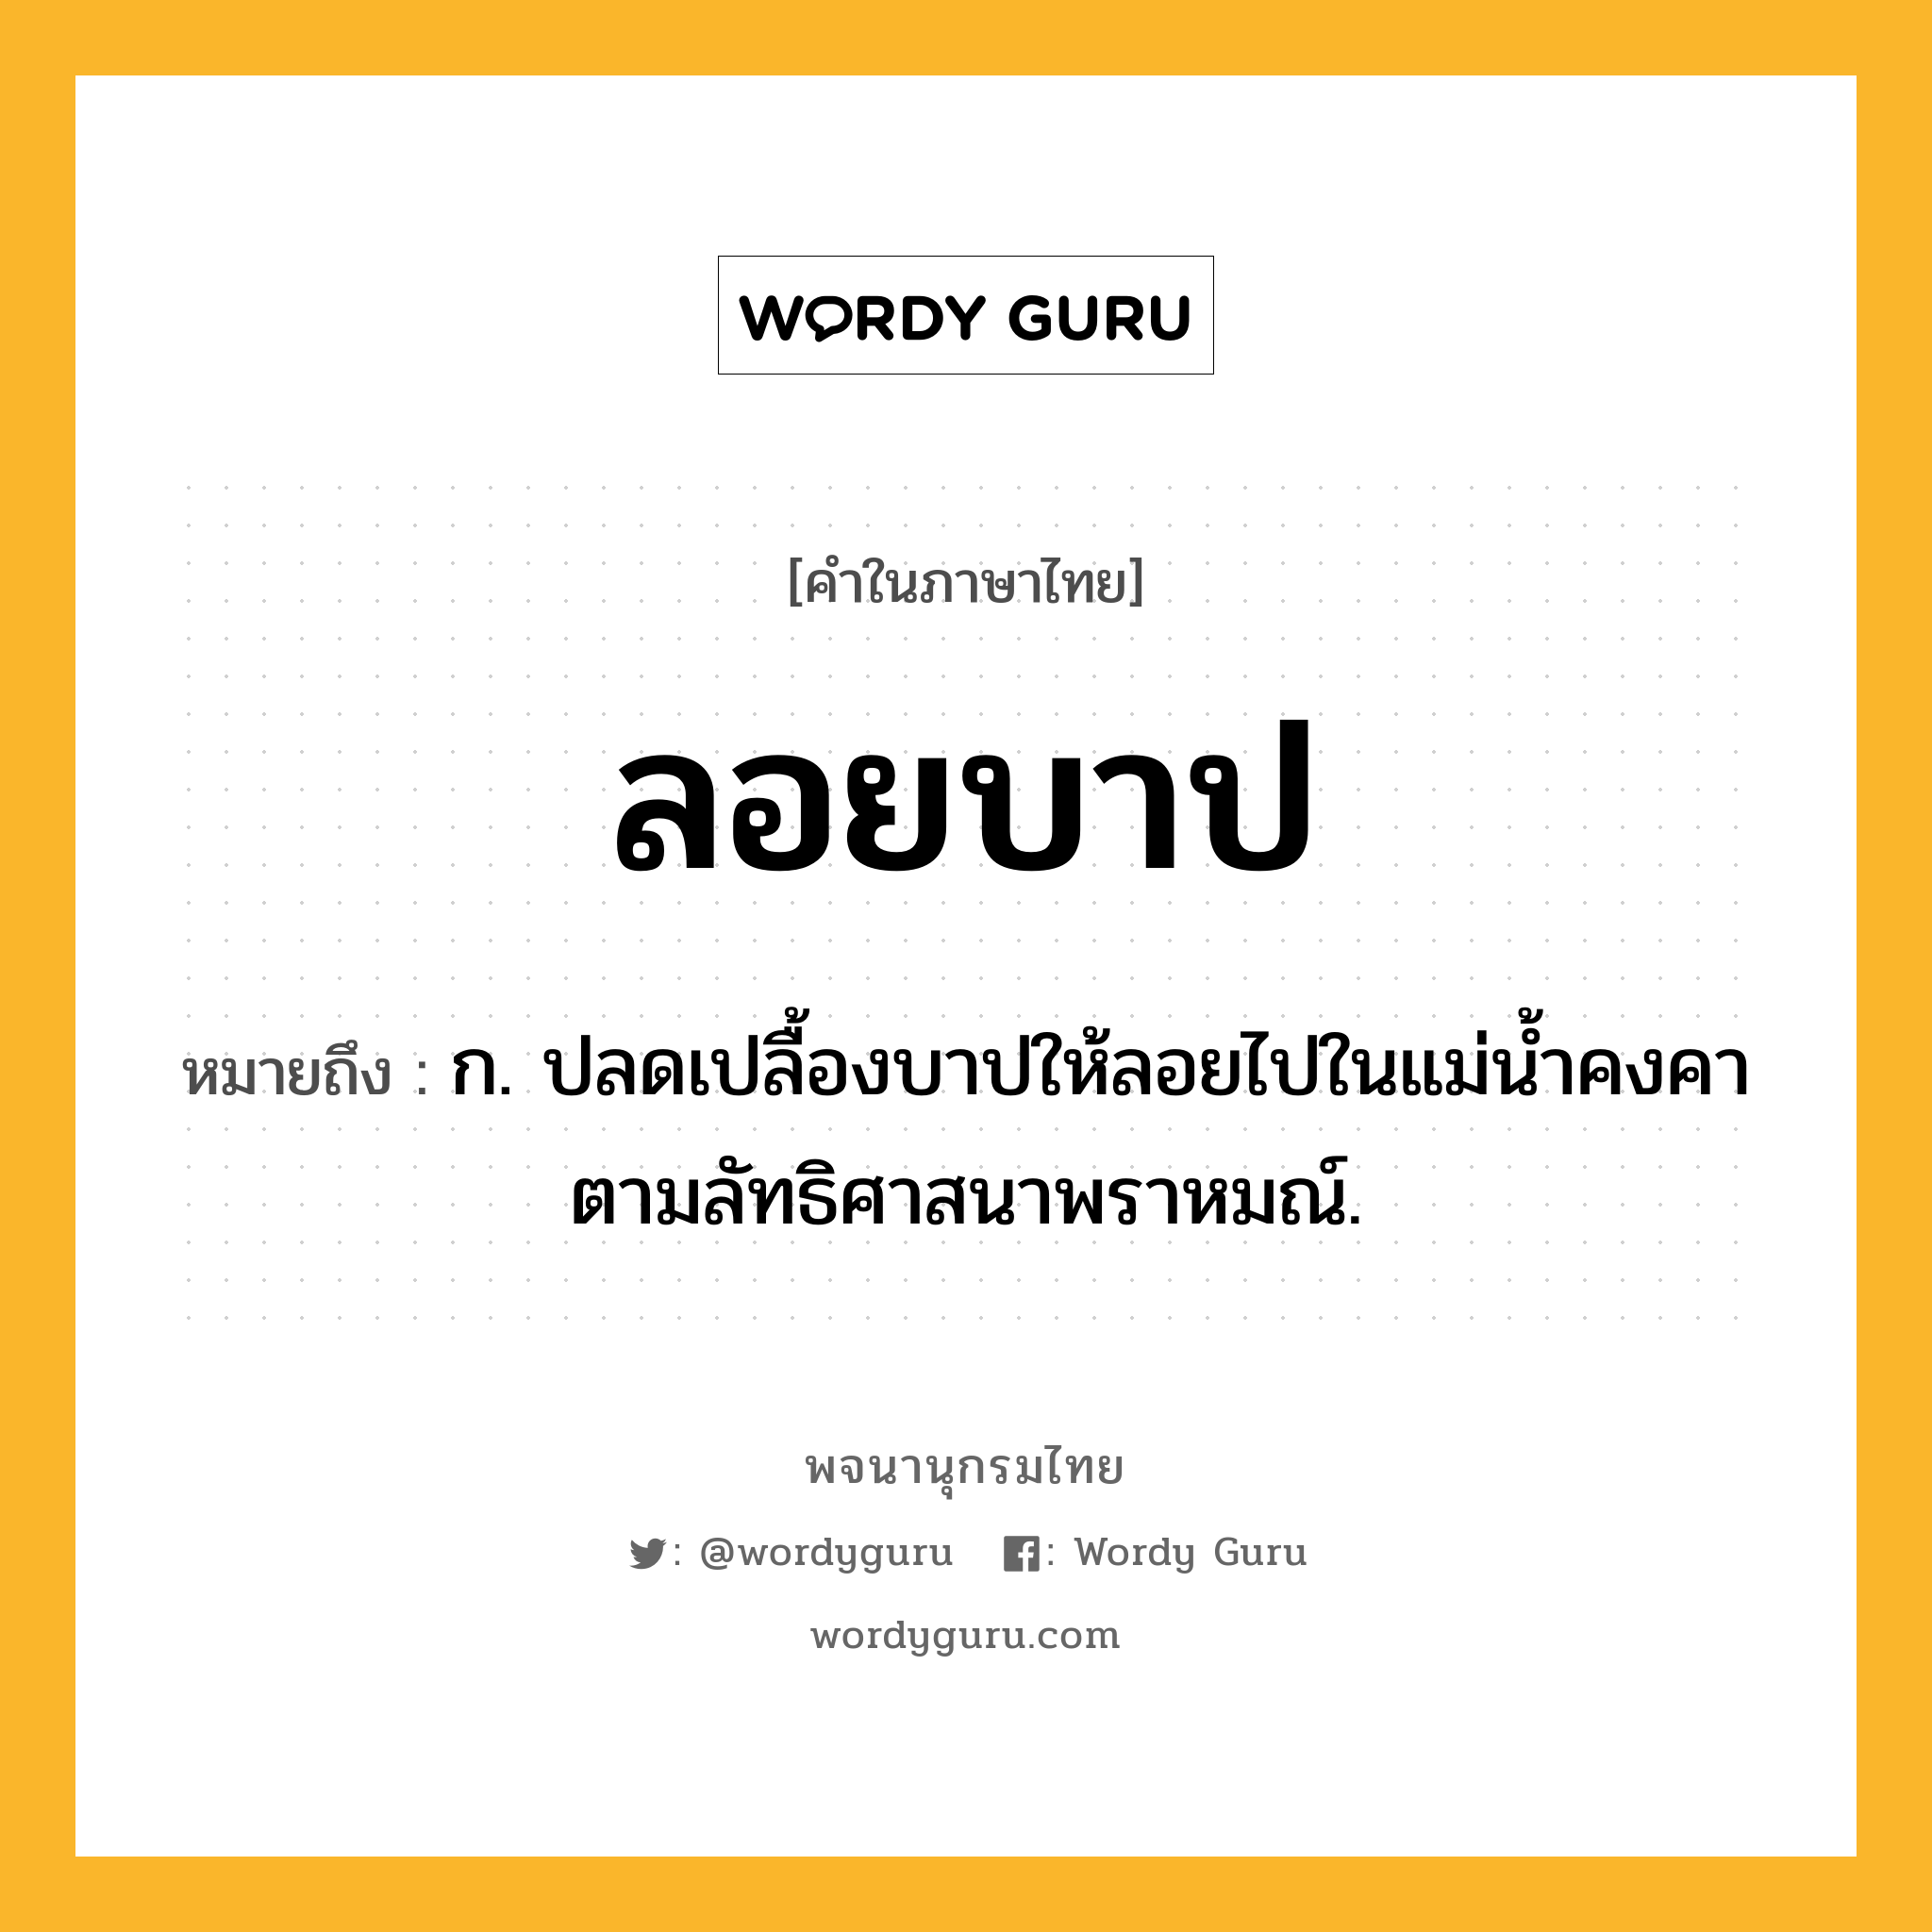 ลอยบาป ความหมาย หมายถึงอะไร?, คำในภาษาไทย ลอยบาป หมายถึง ก. ปลดเปลื้องบาปให้ลอยไปในแม่น้ำคงคาตามลัทธิศาสนาพราหมณ์.